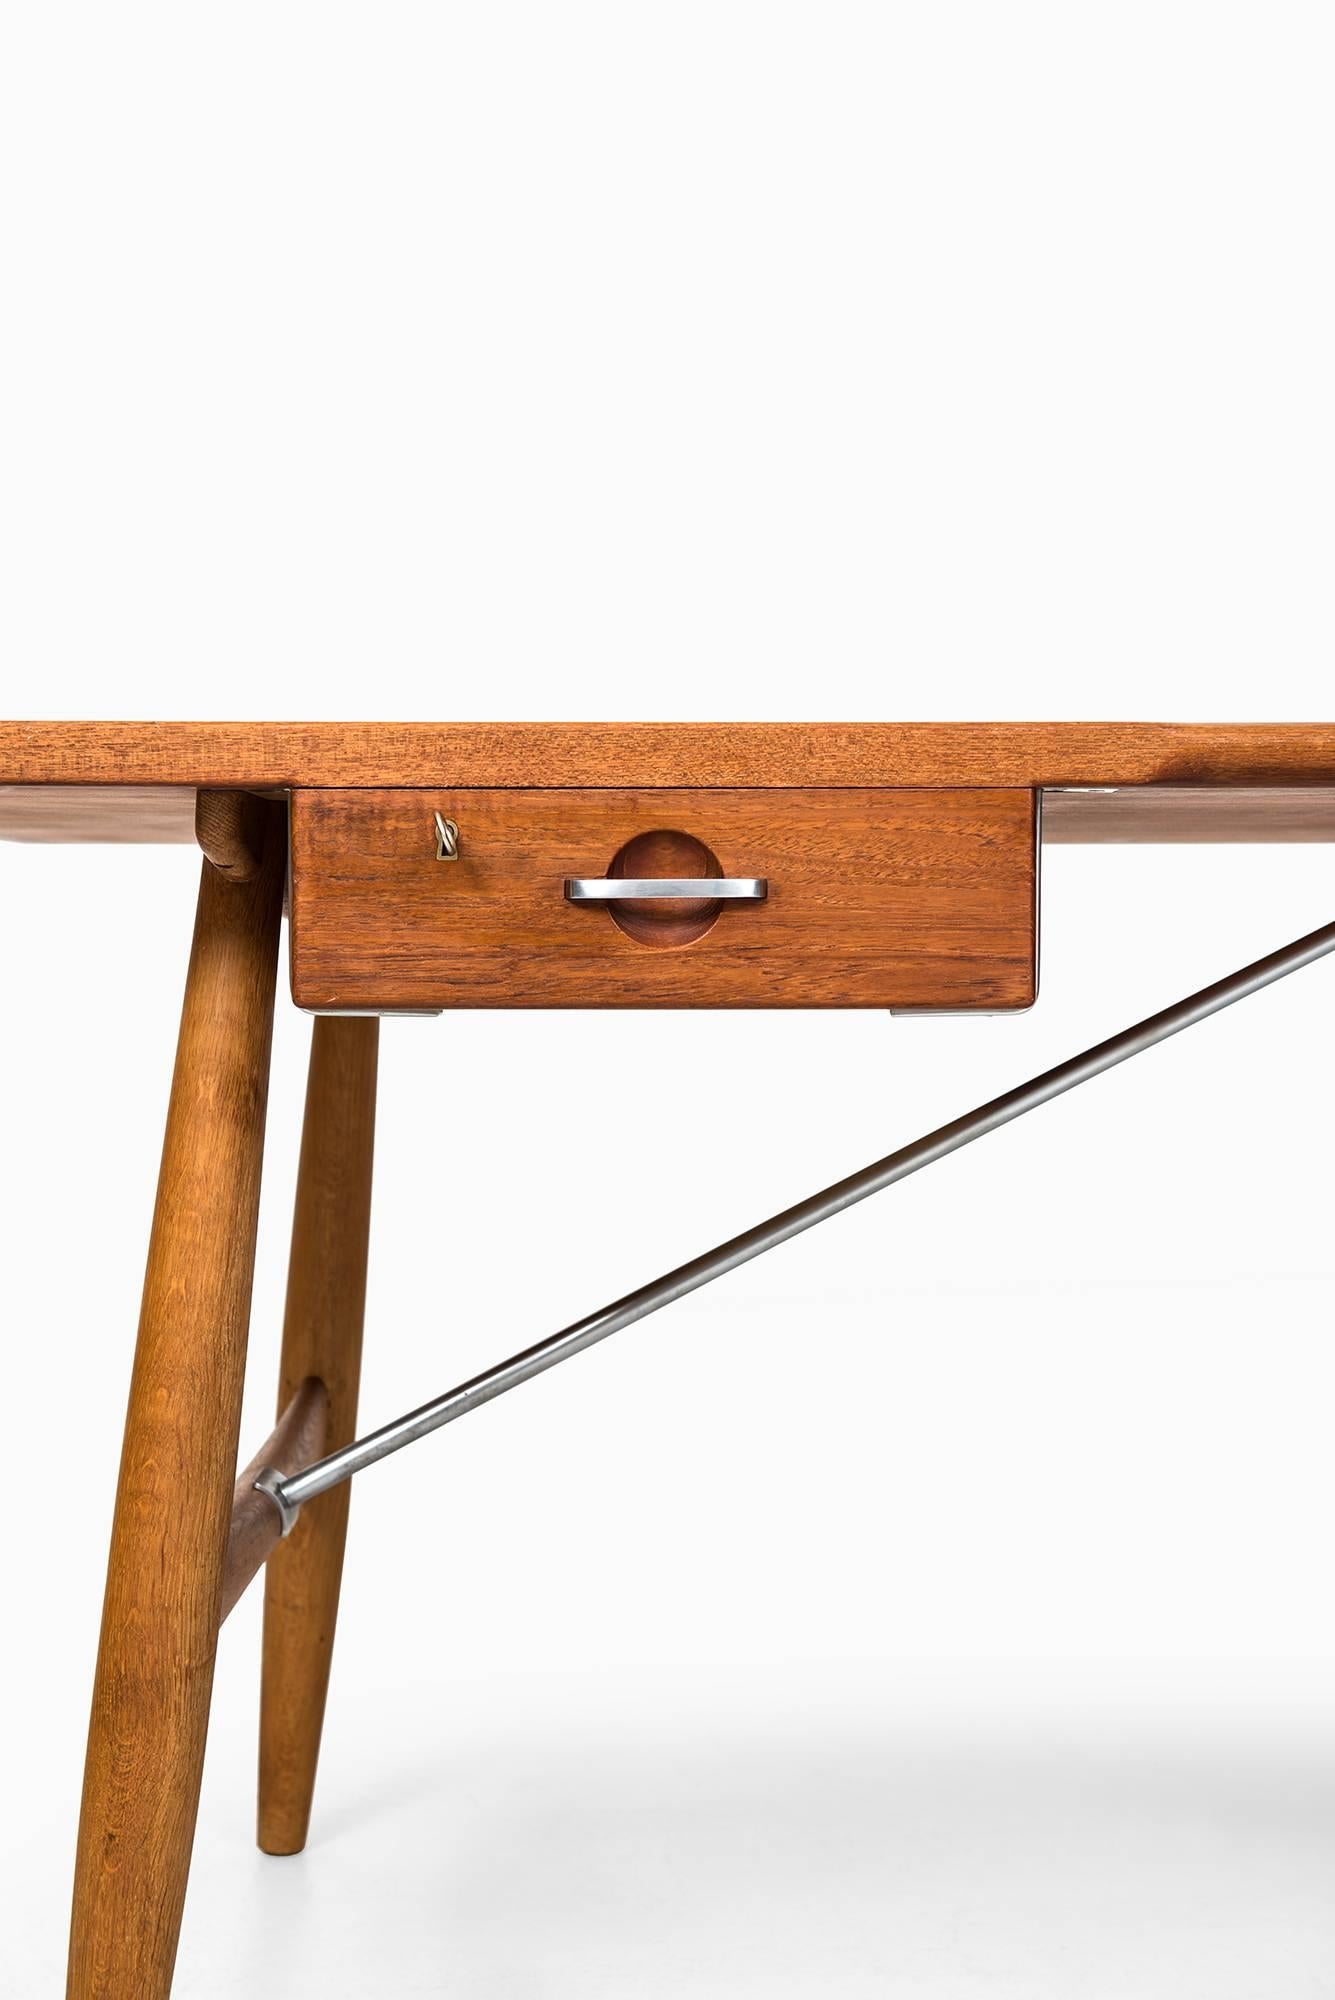 Very rare desk model JH-571 designed by Hans Wegner. Produced by Johannes Hansen in Denmark.